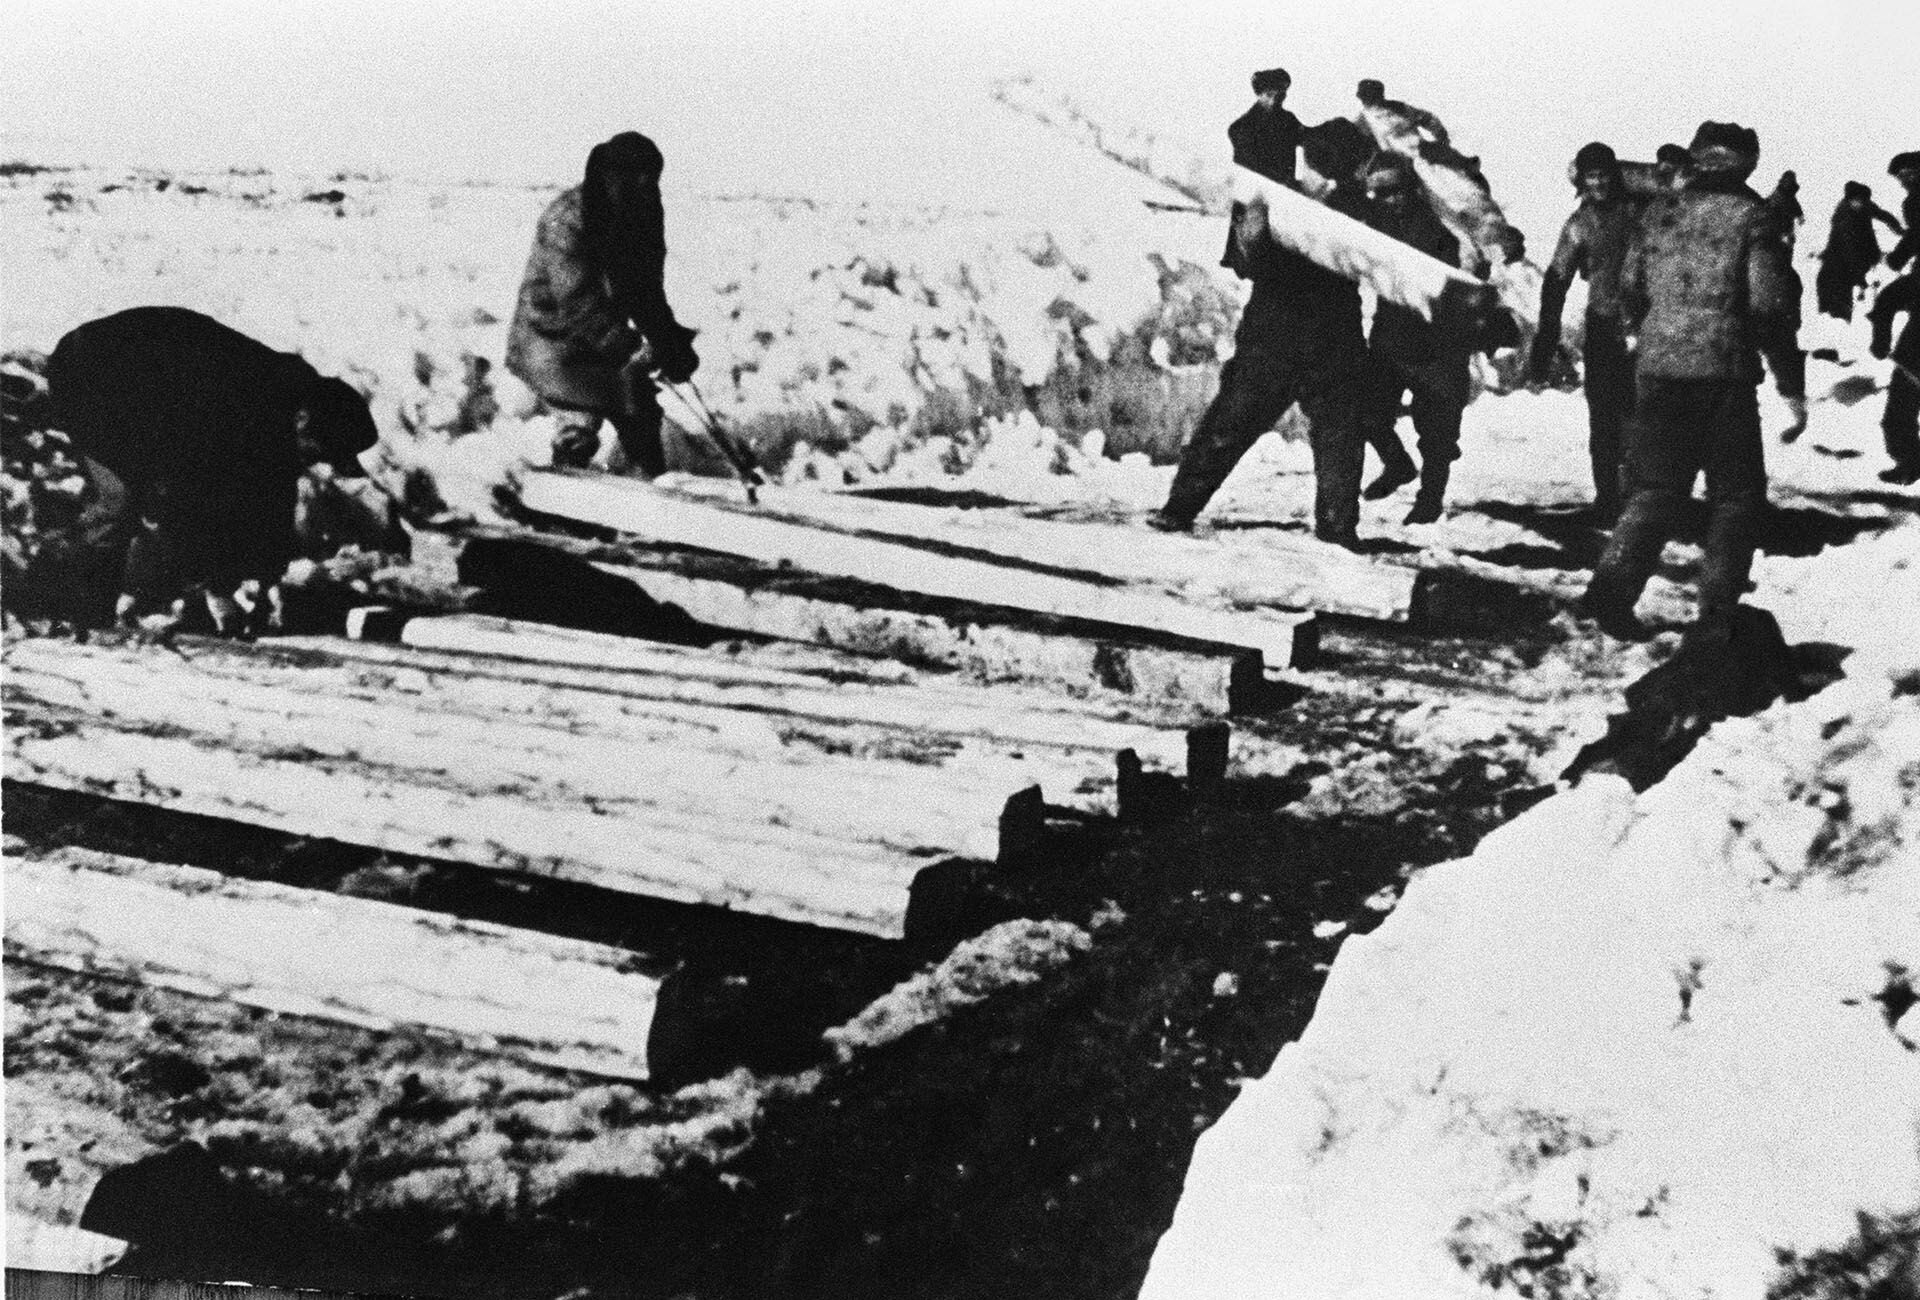 Gulag, los campos de concentración de Stalin